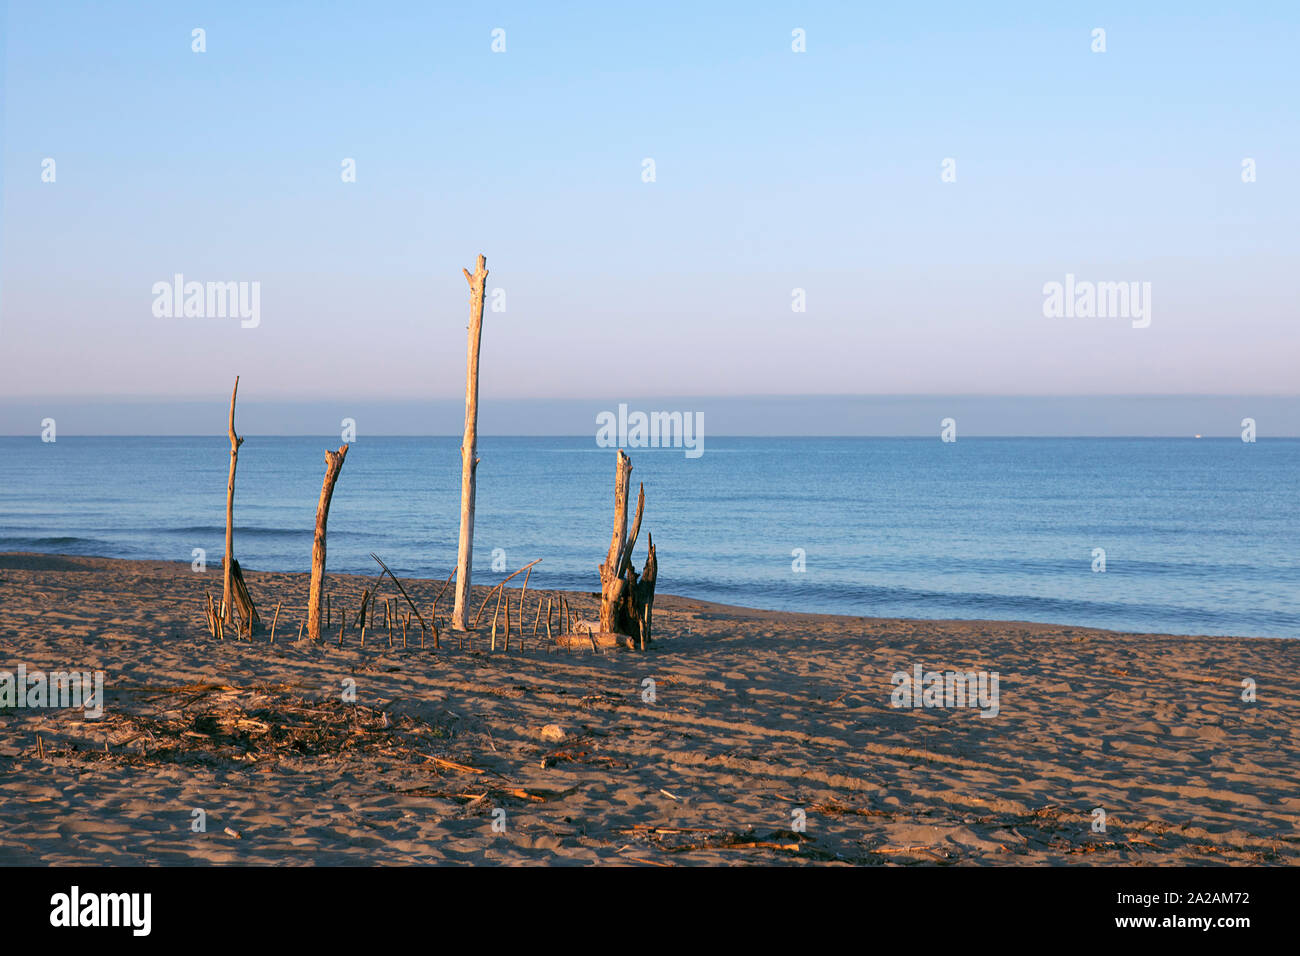 Una scultura di bastoni sulla spiaggia, ramoscelli costruzione sulla spiaggia, bastoni di legno incollato nella sabbia. La land art, sulla costa del mare, seascape in mattinata Foto Stock